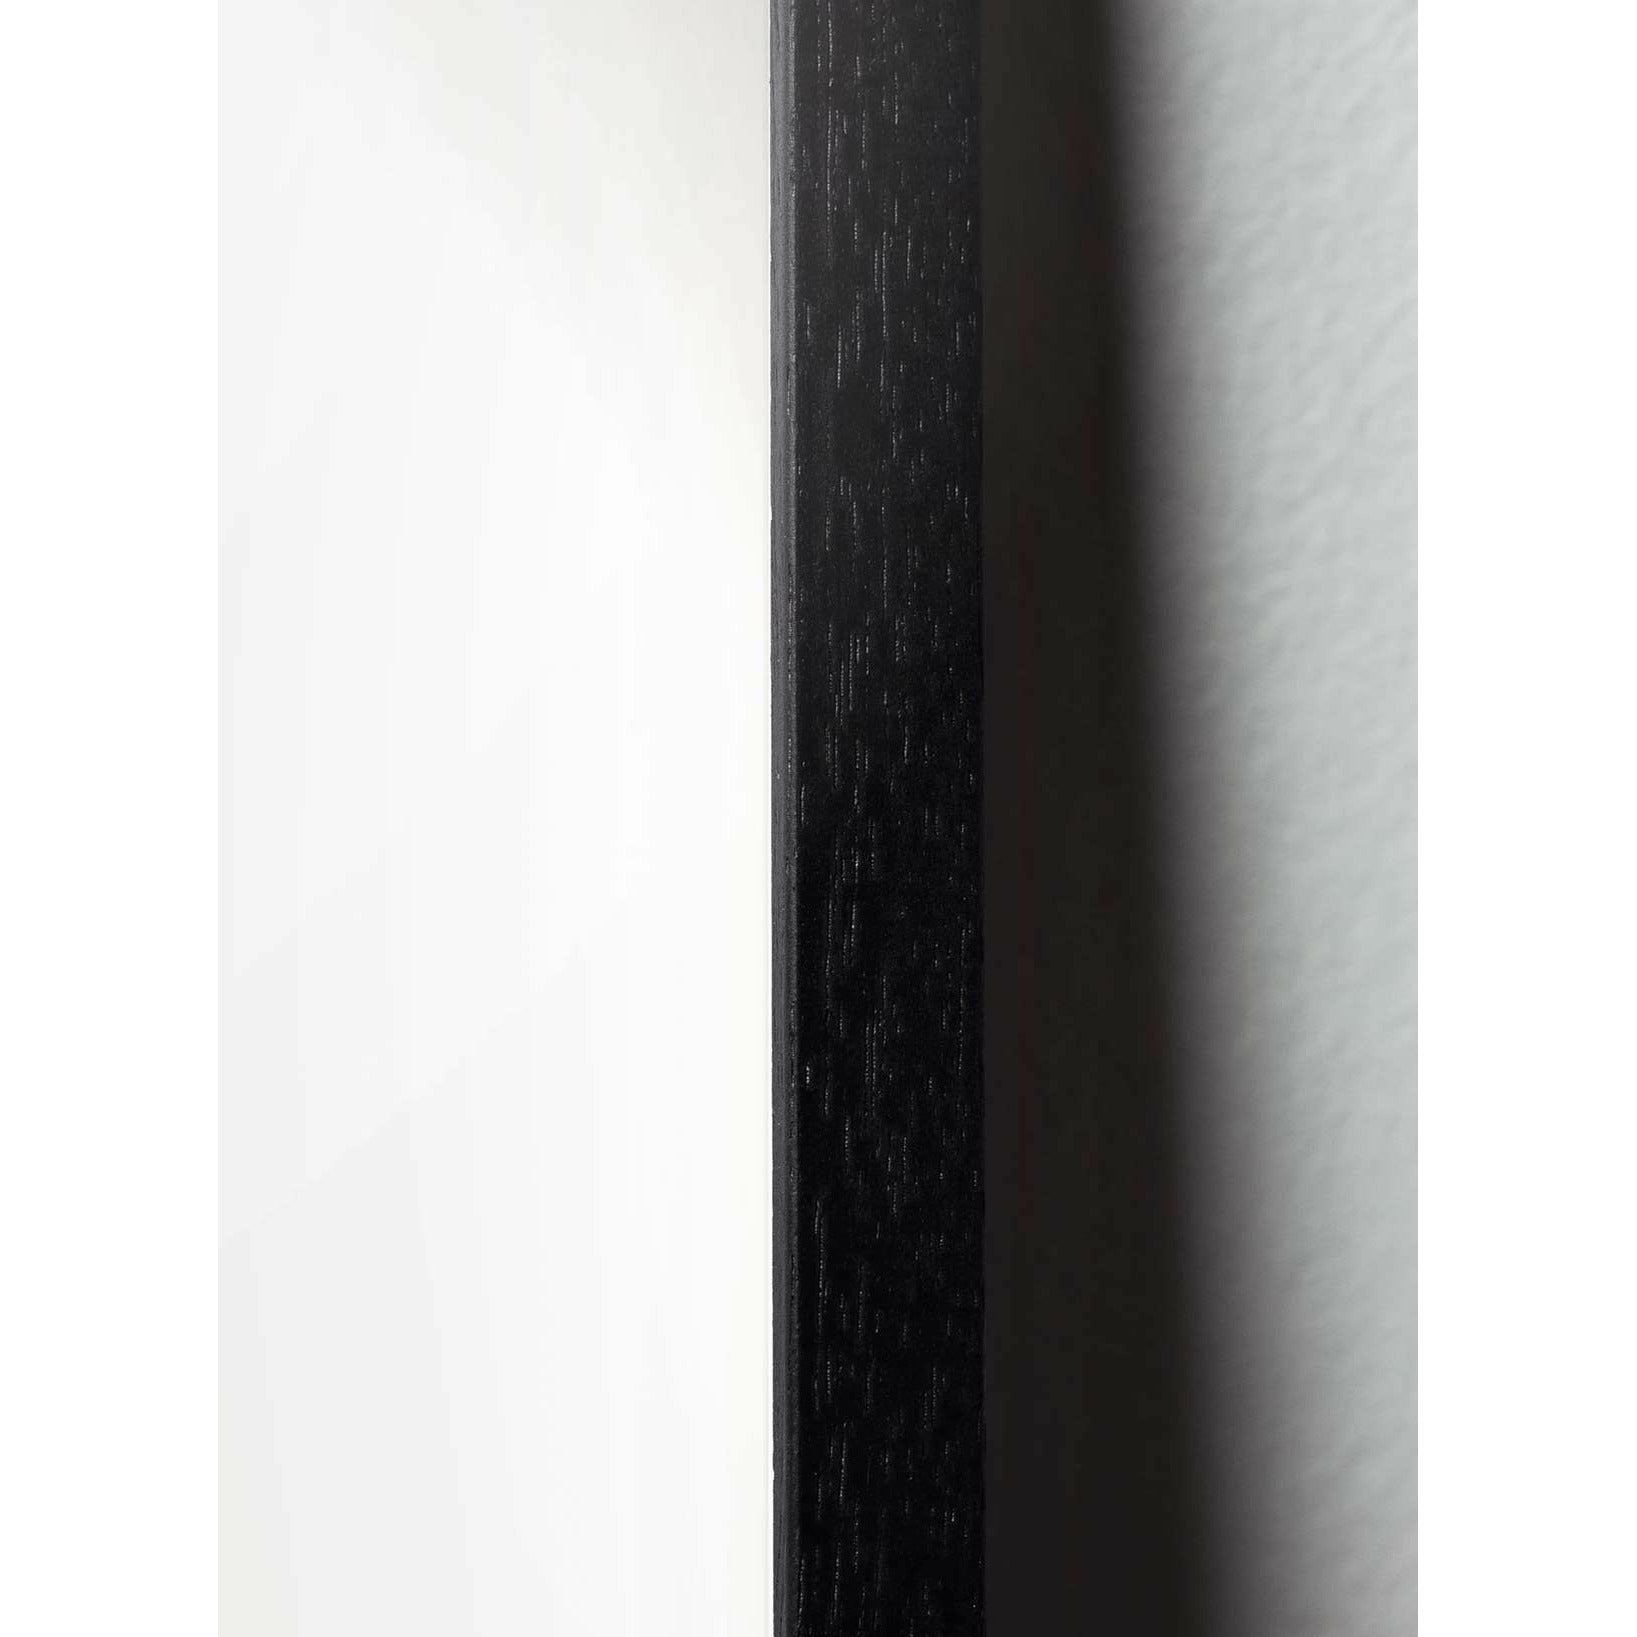 Plakát Ant Line Brainchild, rám v černém lakovaném dřevu 30x40 cm, bílé pozadí